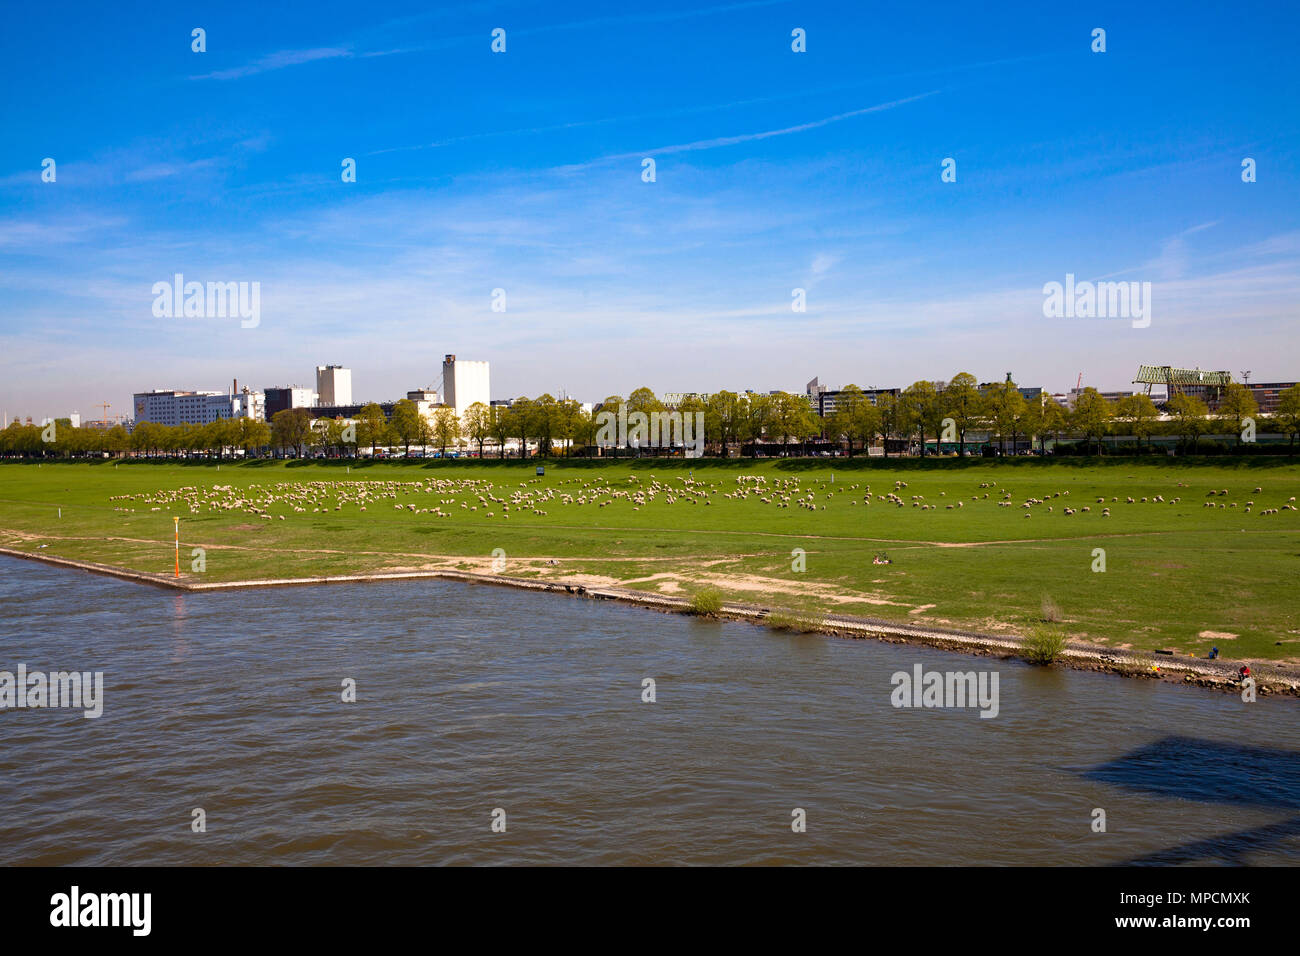 Alemania, Colonia, vistas al río Rin al puerto en el distrito de Deutz. Deutschland, Koeln, Blick ueber den Rhein zum Deutzer Hafen. Foto de stock